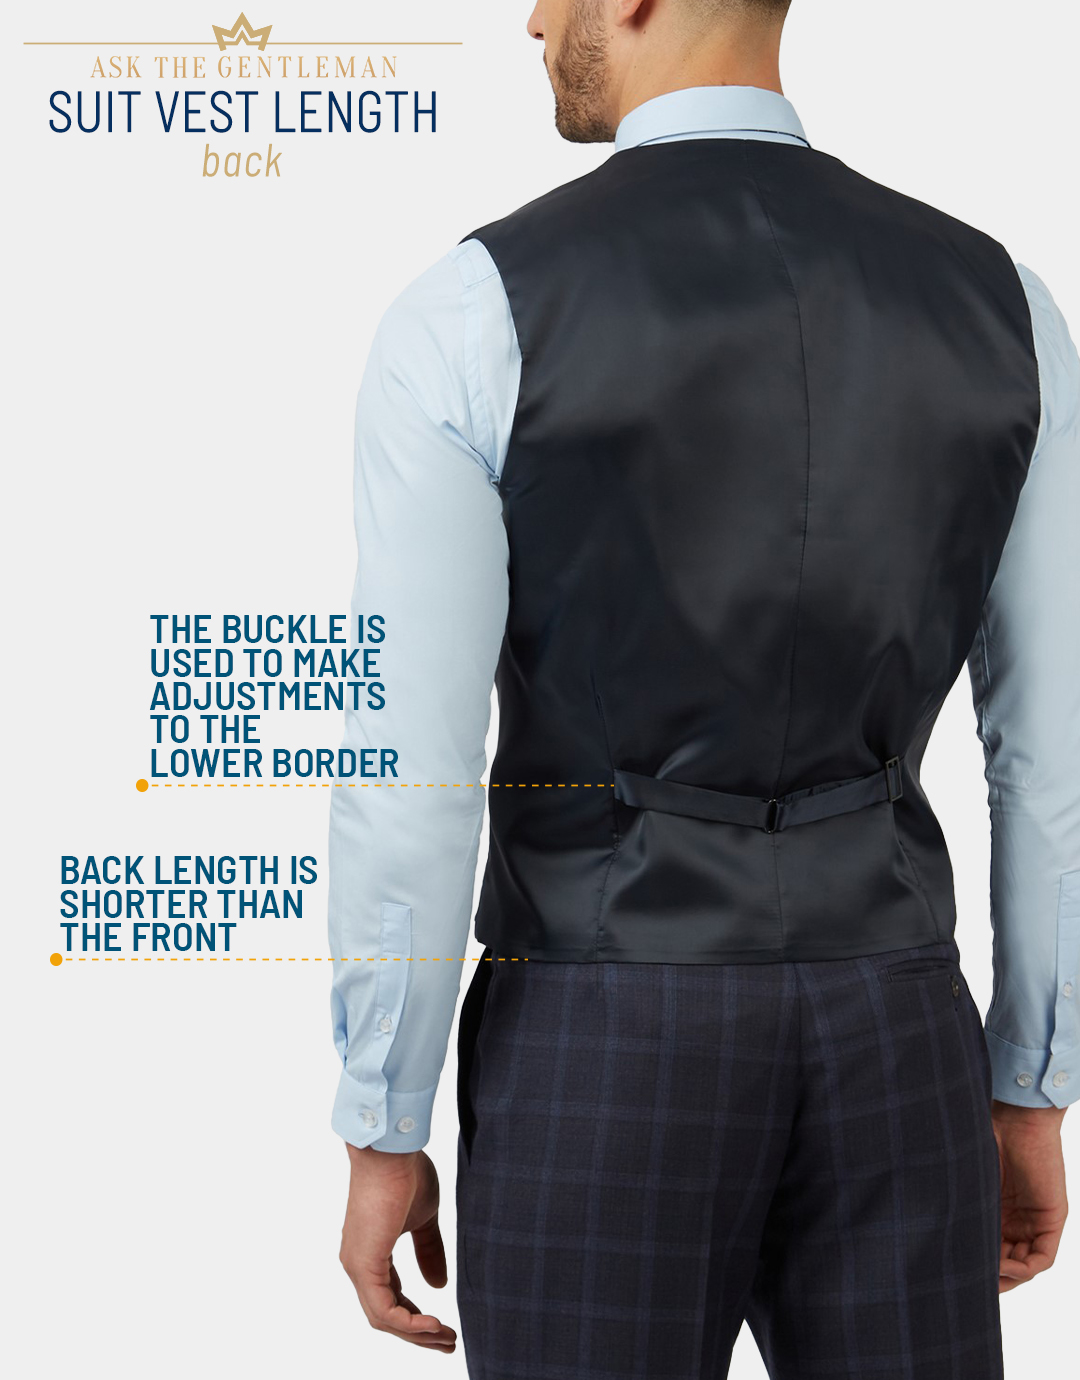 Proper suit vest back length